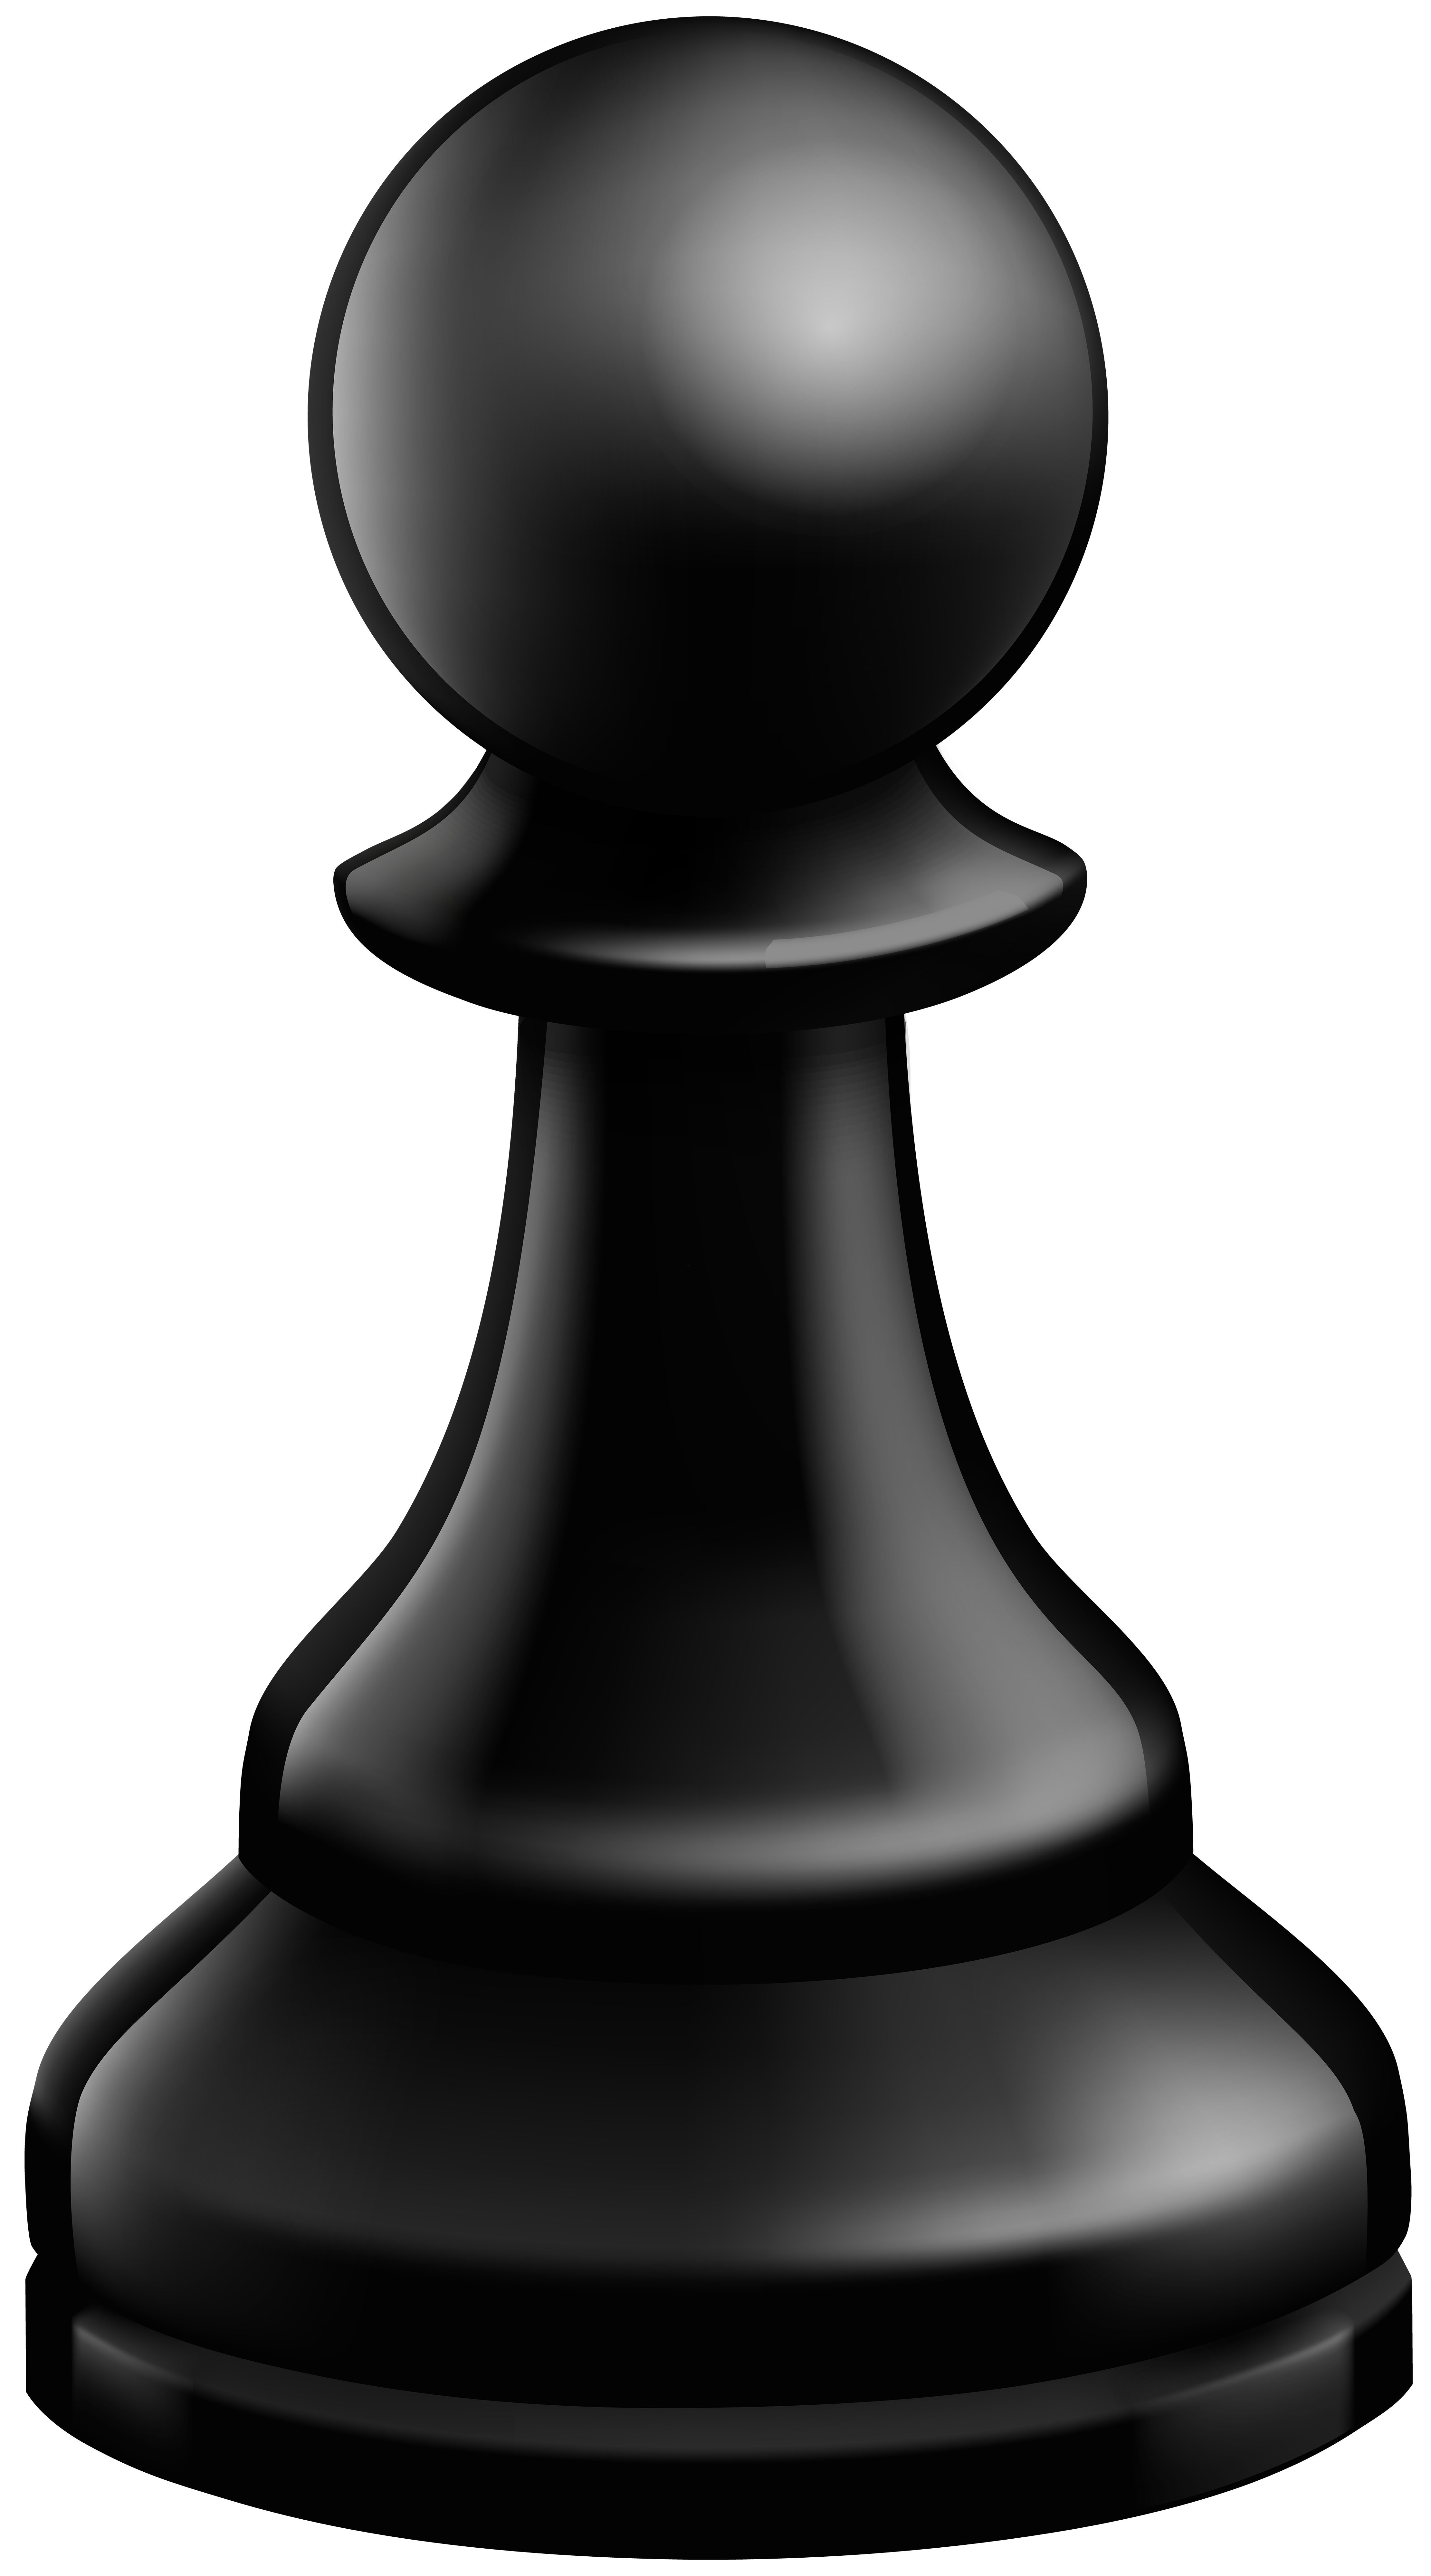 Chess Pawn Clip Art